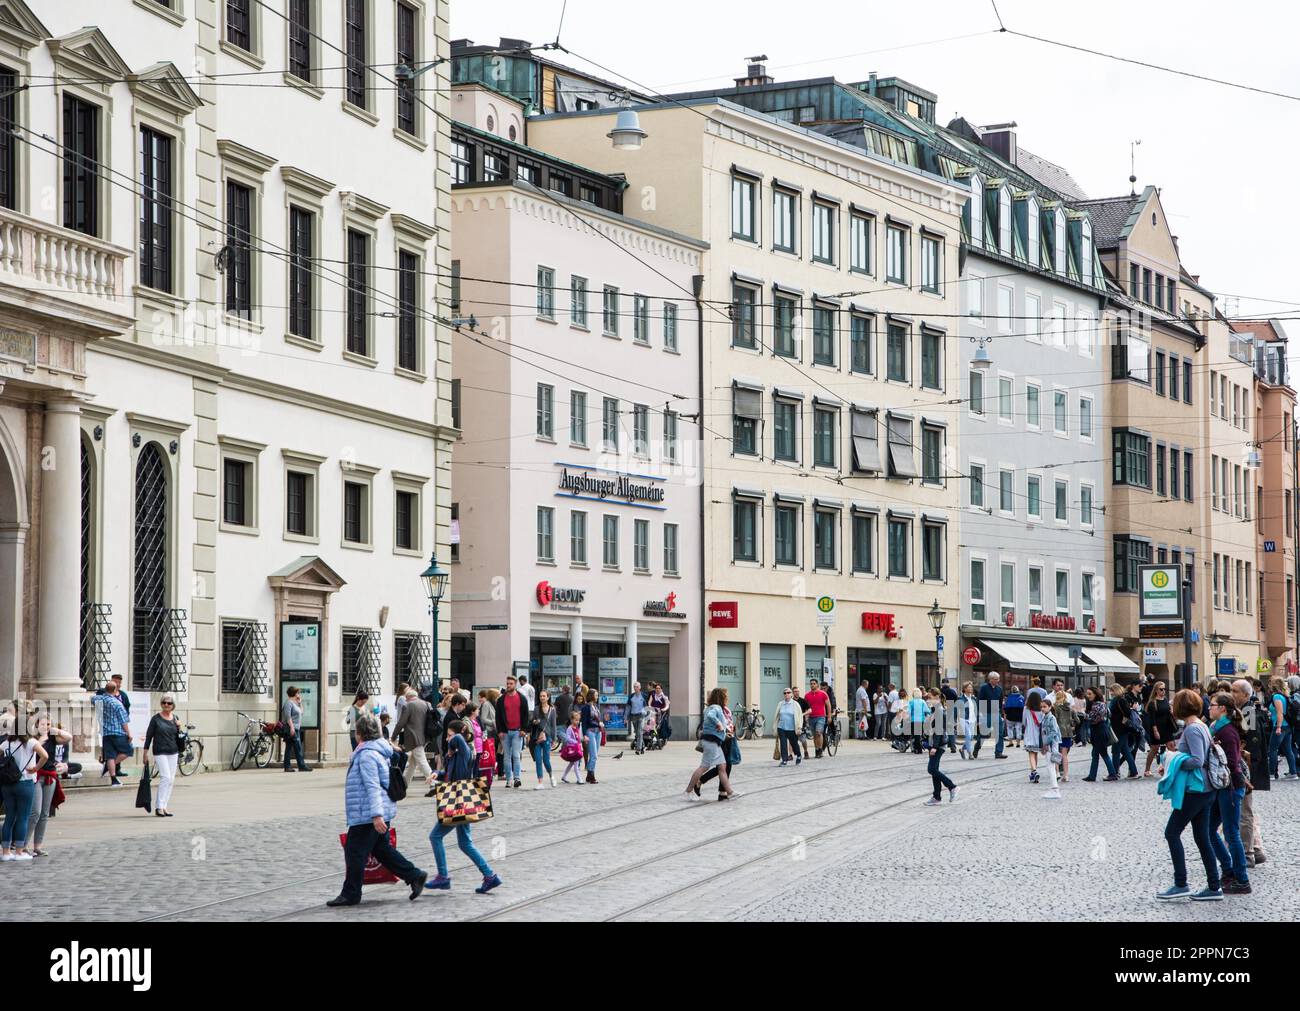 AUGSBURG - 1. APRIL: Menschen in einer Straße in Augsburg am 1. April 2017. Augsburg ist eine der ältesten Städte Deutschlands. Foto aufgenommen Stockfoto